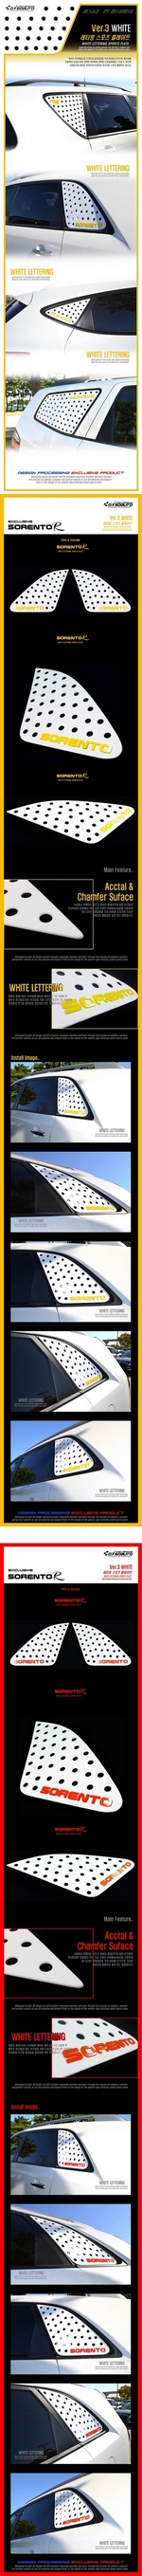 Накладка на заднее стекло бокового окна белая Dxsoauto Unique KIA Sorento 2009-2012